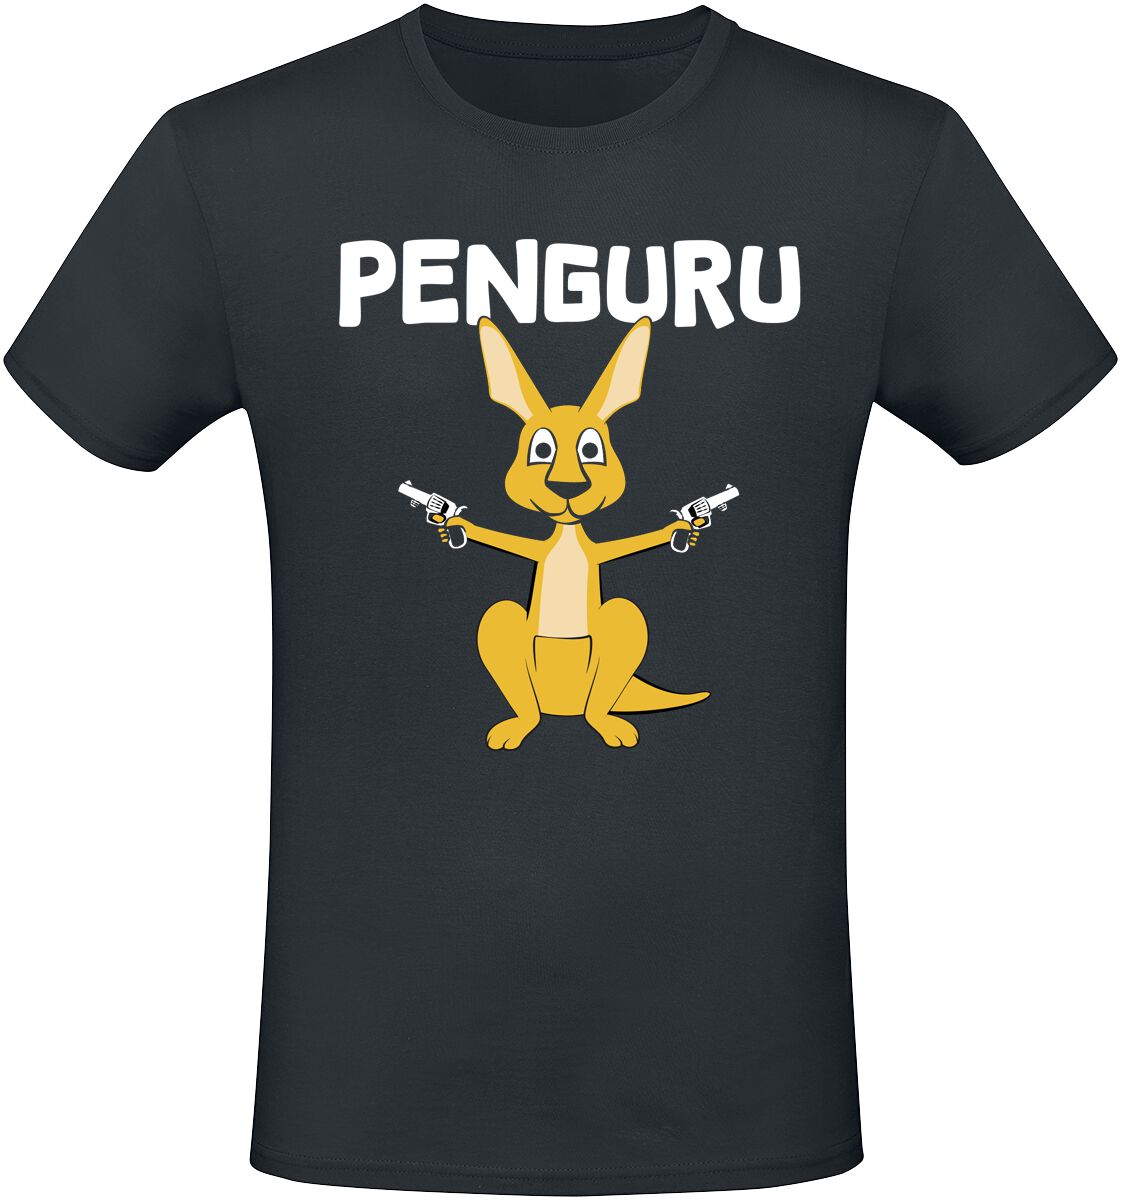 Tierisch T-Shirt - Penguru - M bis 3XL - für Männer - Größe M - schwarz